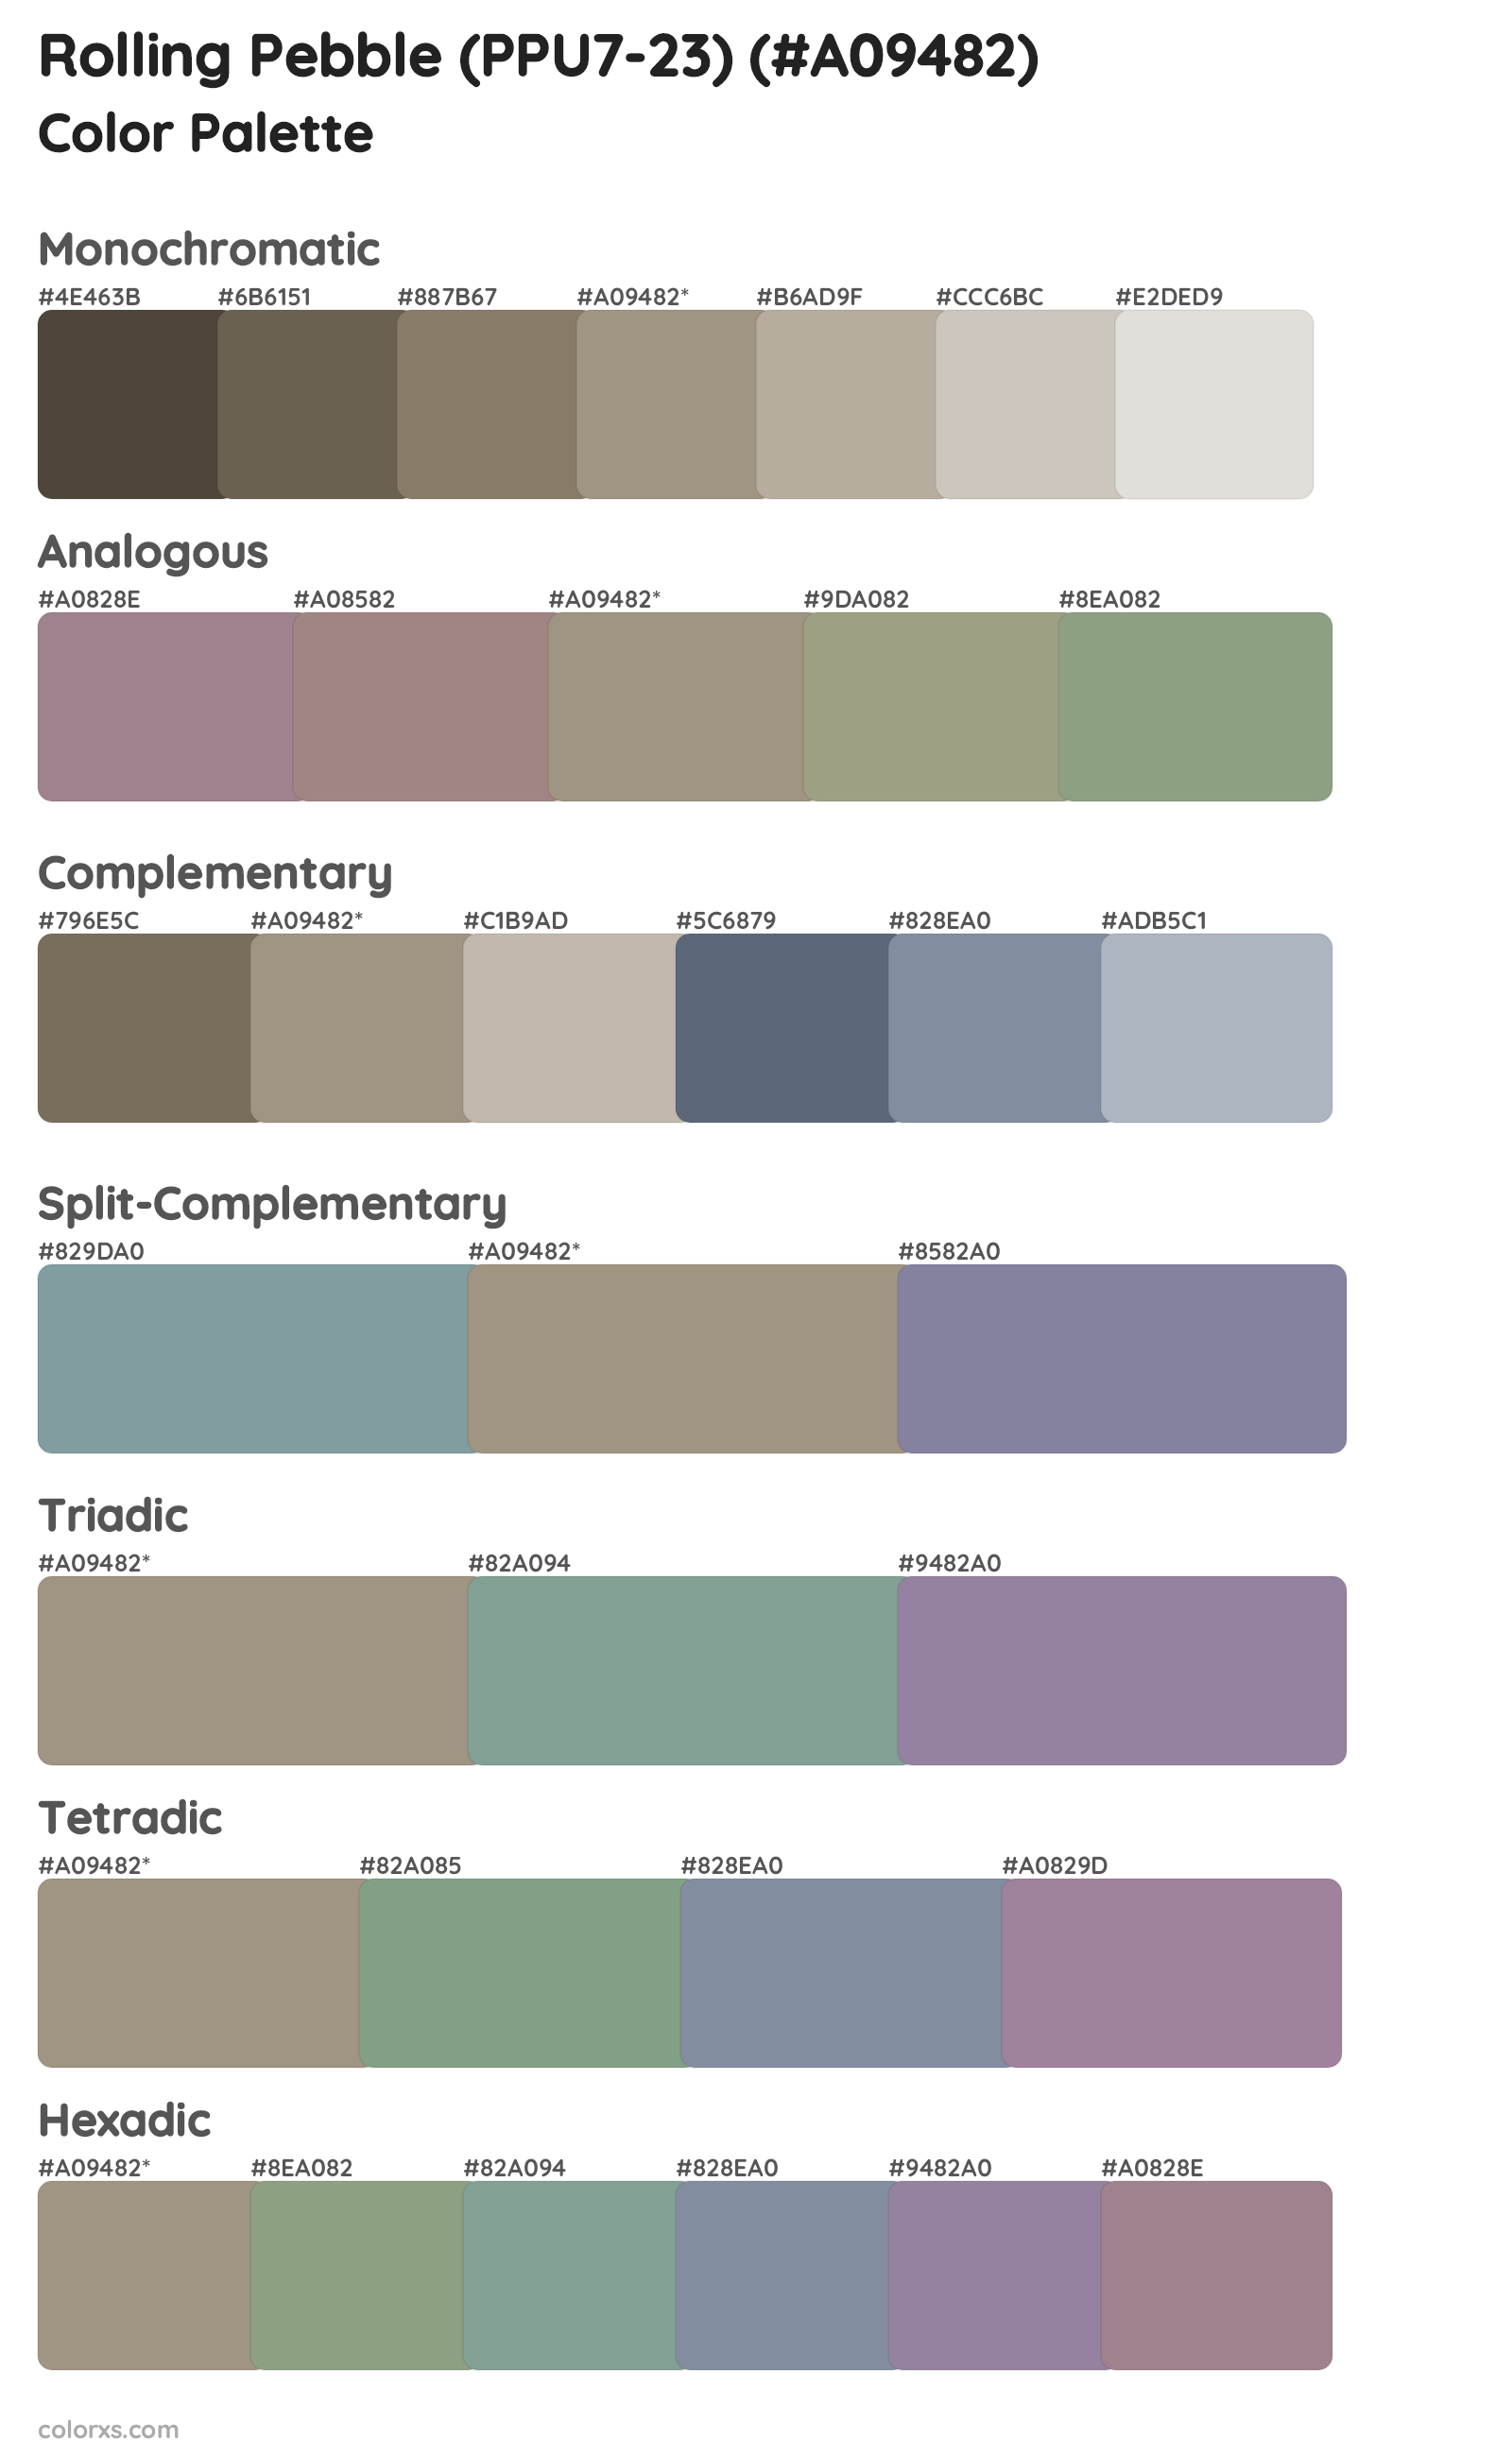 Rolling Pebble (PPU7-23) Color Scheme Palettes